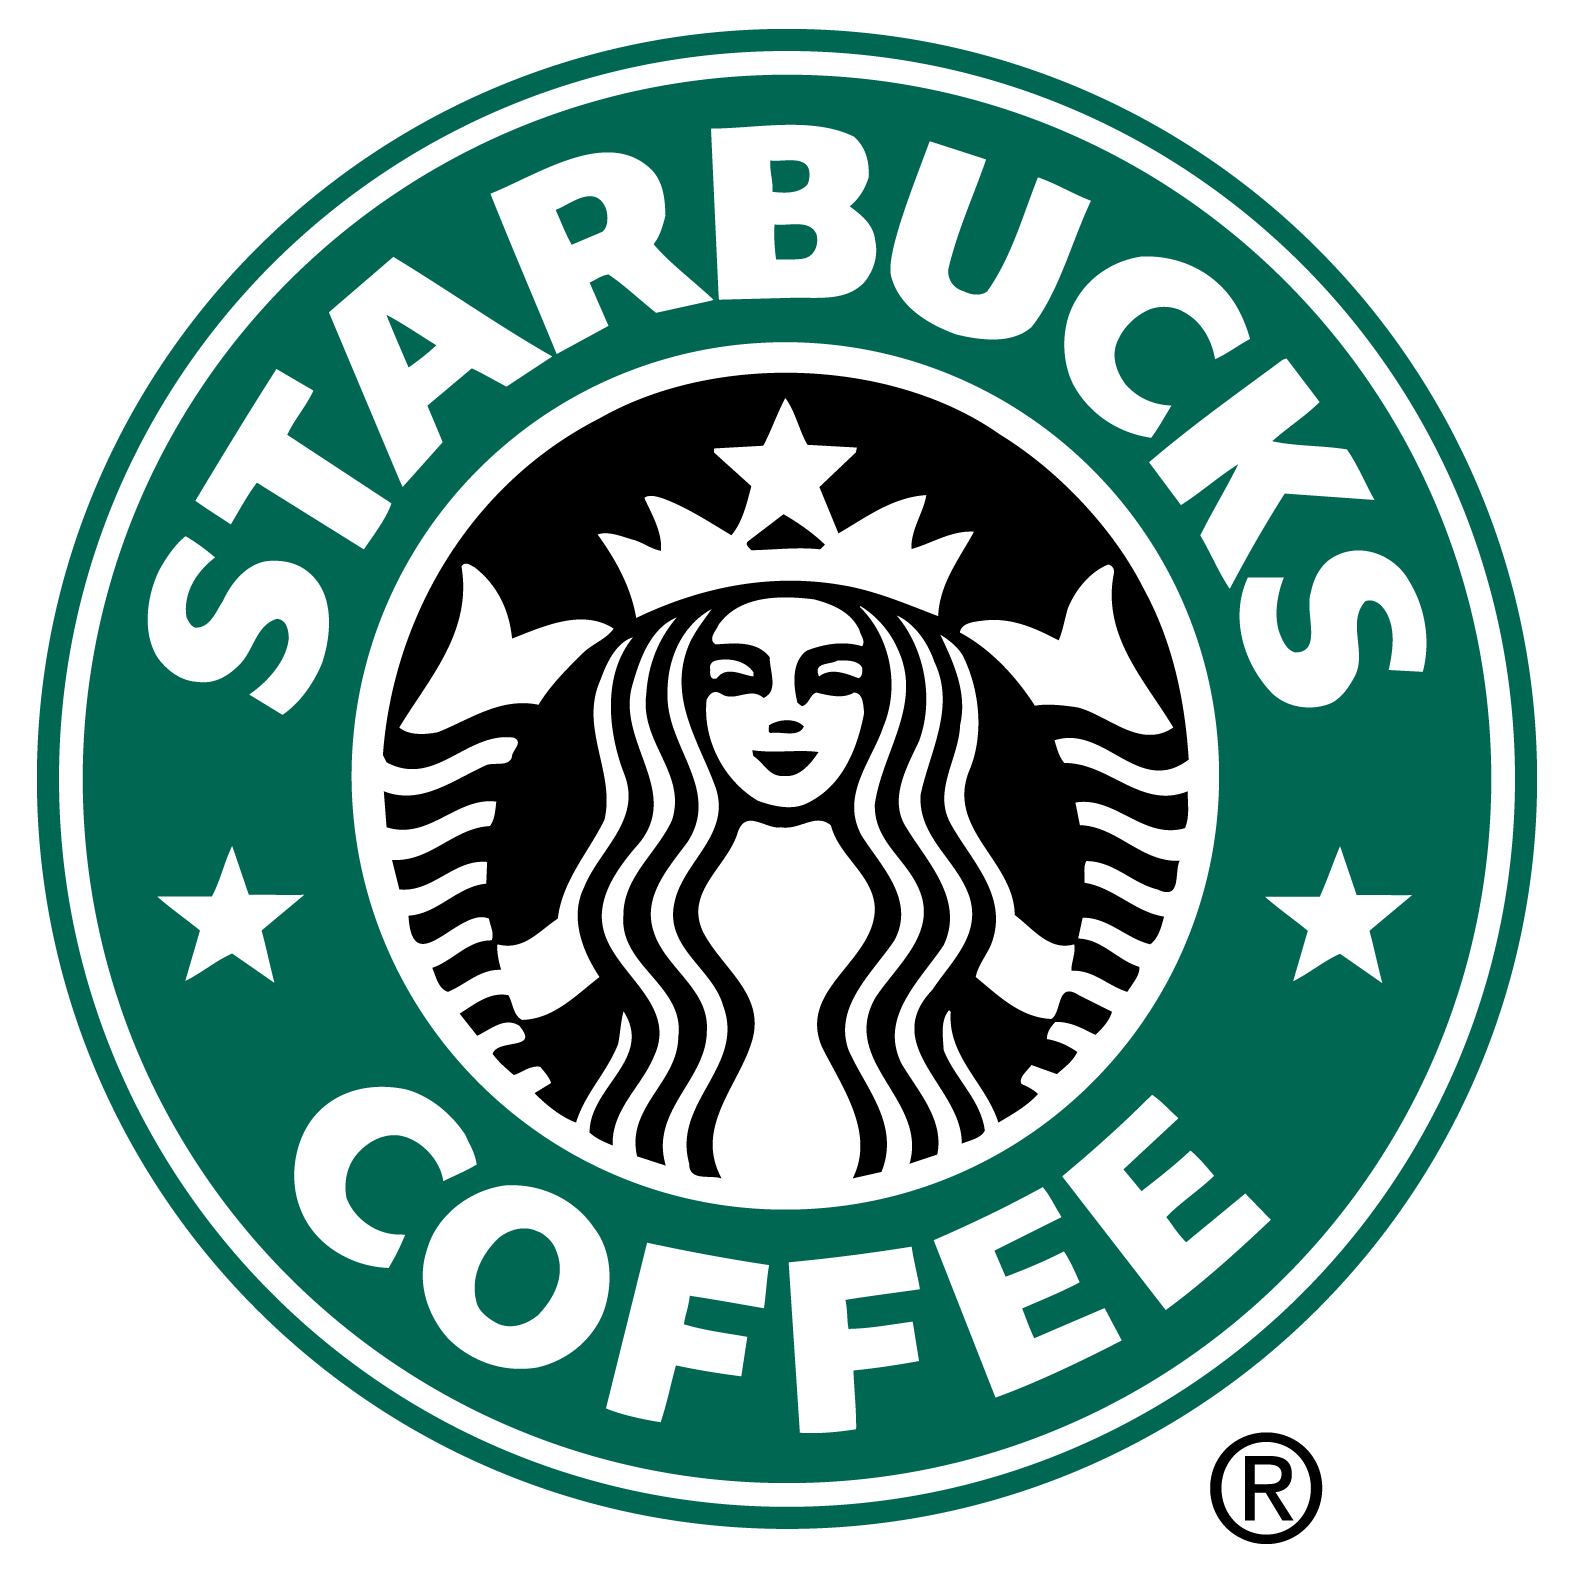 コーヒーショップ Logomark Mania 世界のかわいいロゴマーク集 企業ロゴ ブランドロゴ